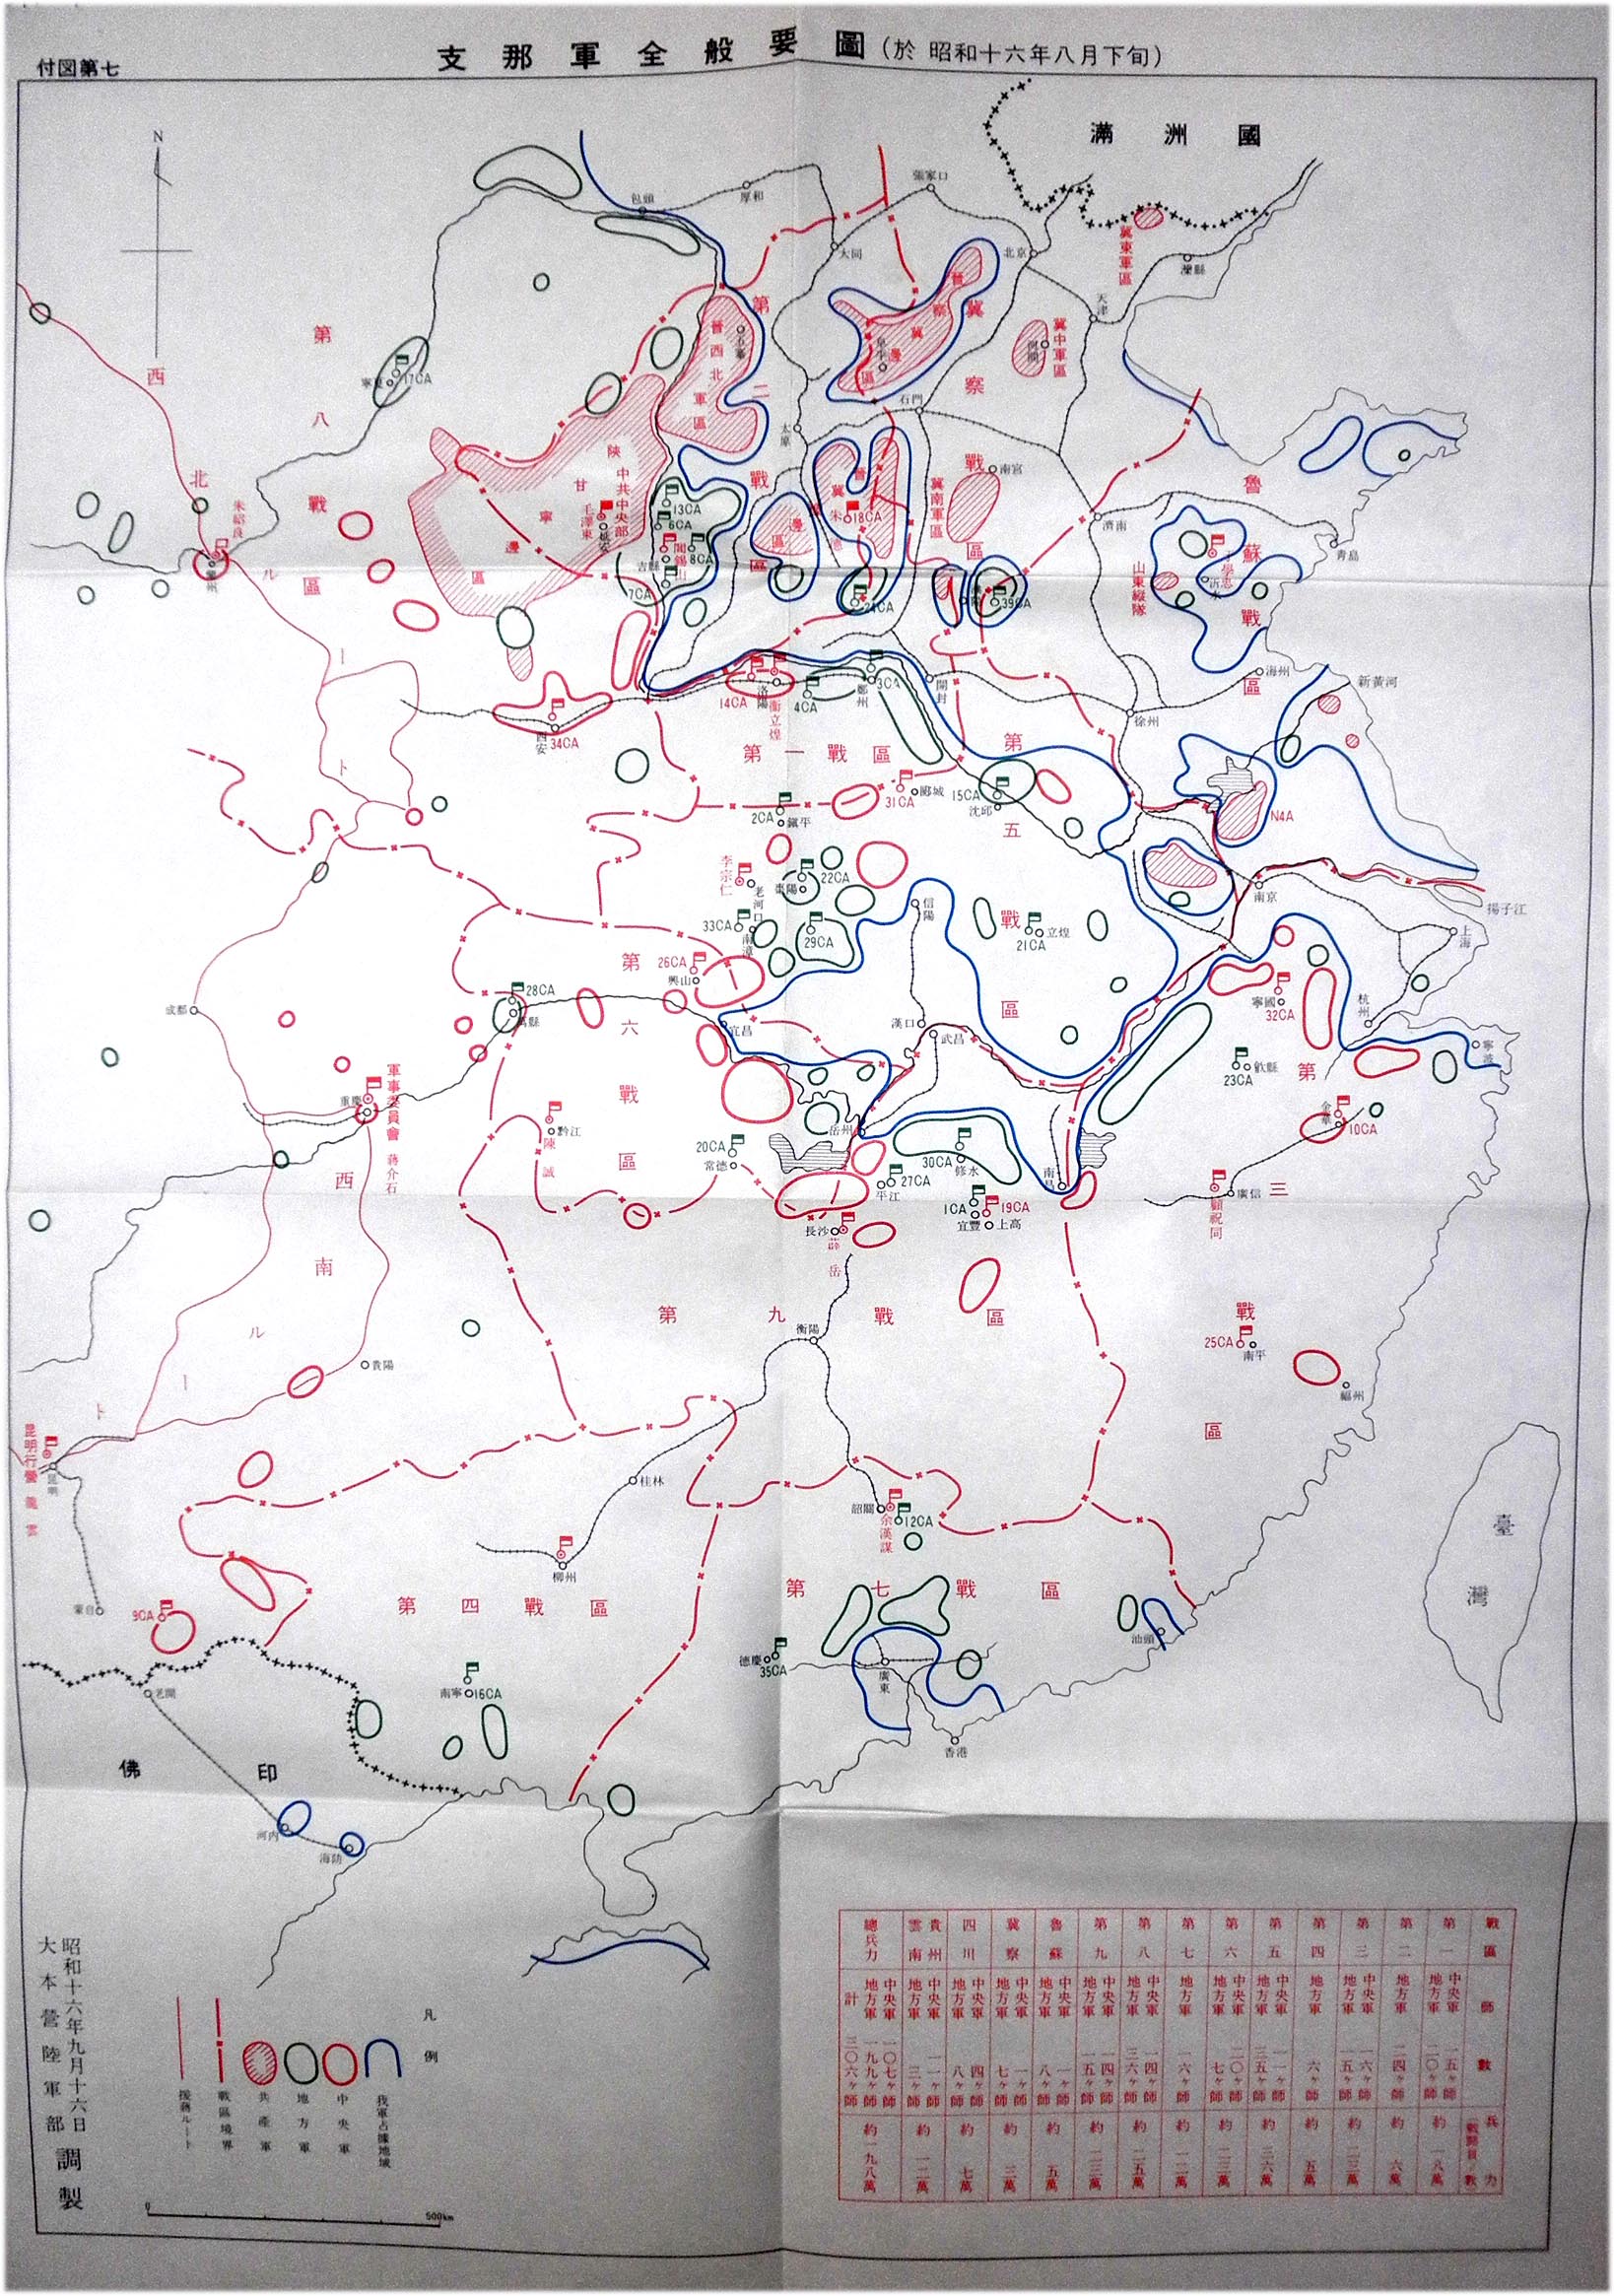 日帝大本营陆军部绘制的1941年8月下旬大陆形势图。蓝线：日军占据地域 斜线红圈：共军集结地域 红圈：蒋军集结地域